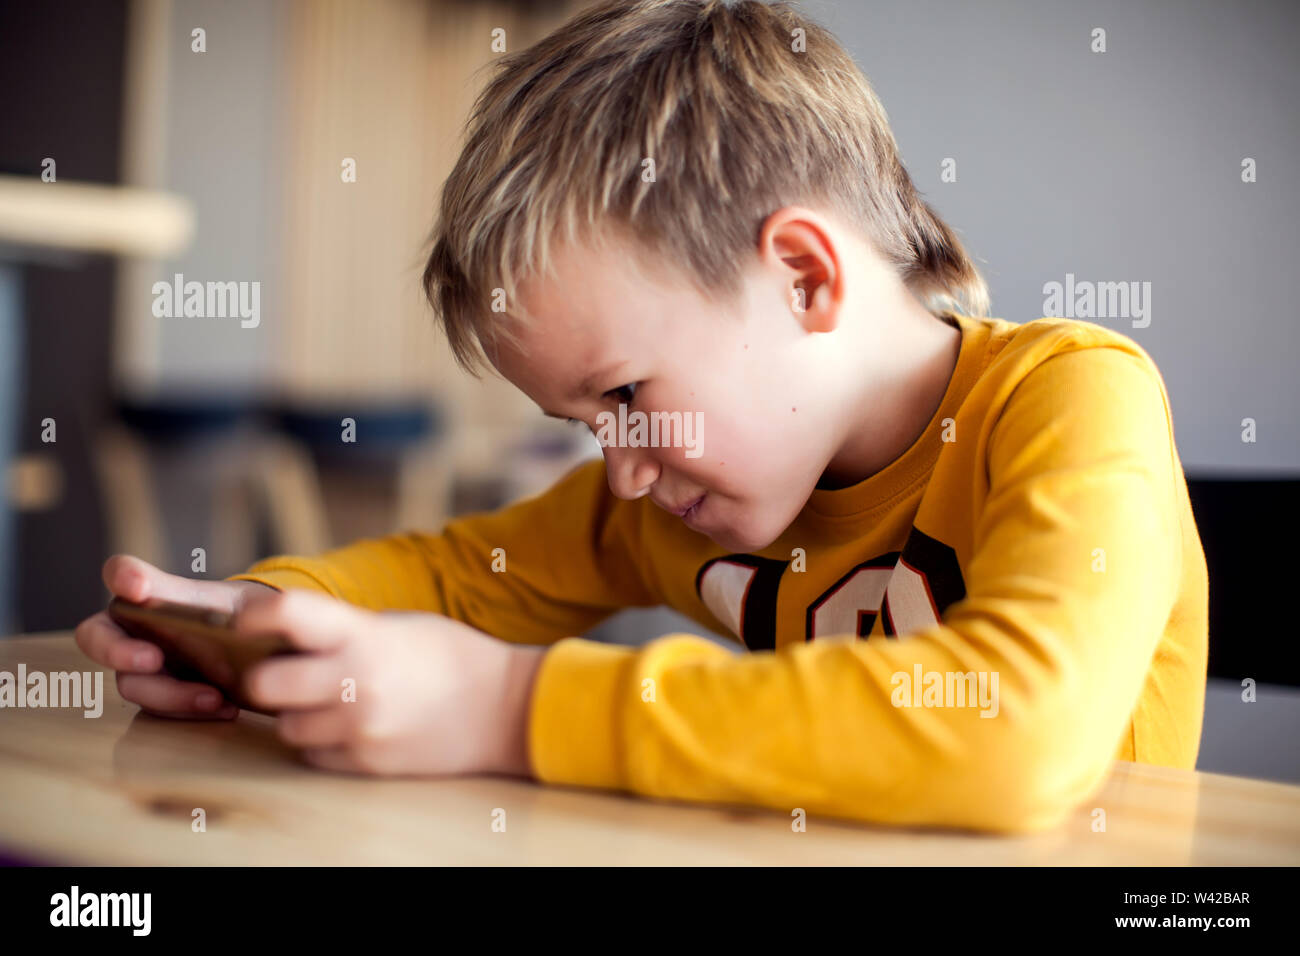 Kinder, Technologie und Internet Konzept. Wenig lächelnde Kind Junge spielen oder im Internet surfen auf digitalen Smartphone Stockfoto